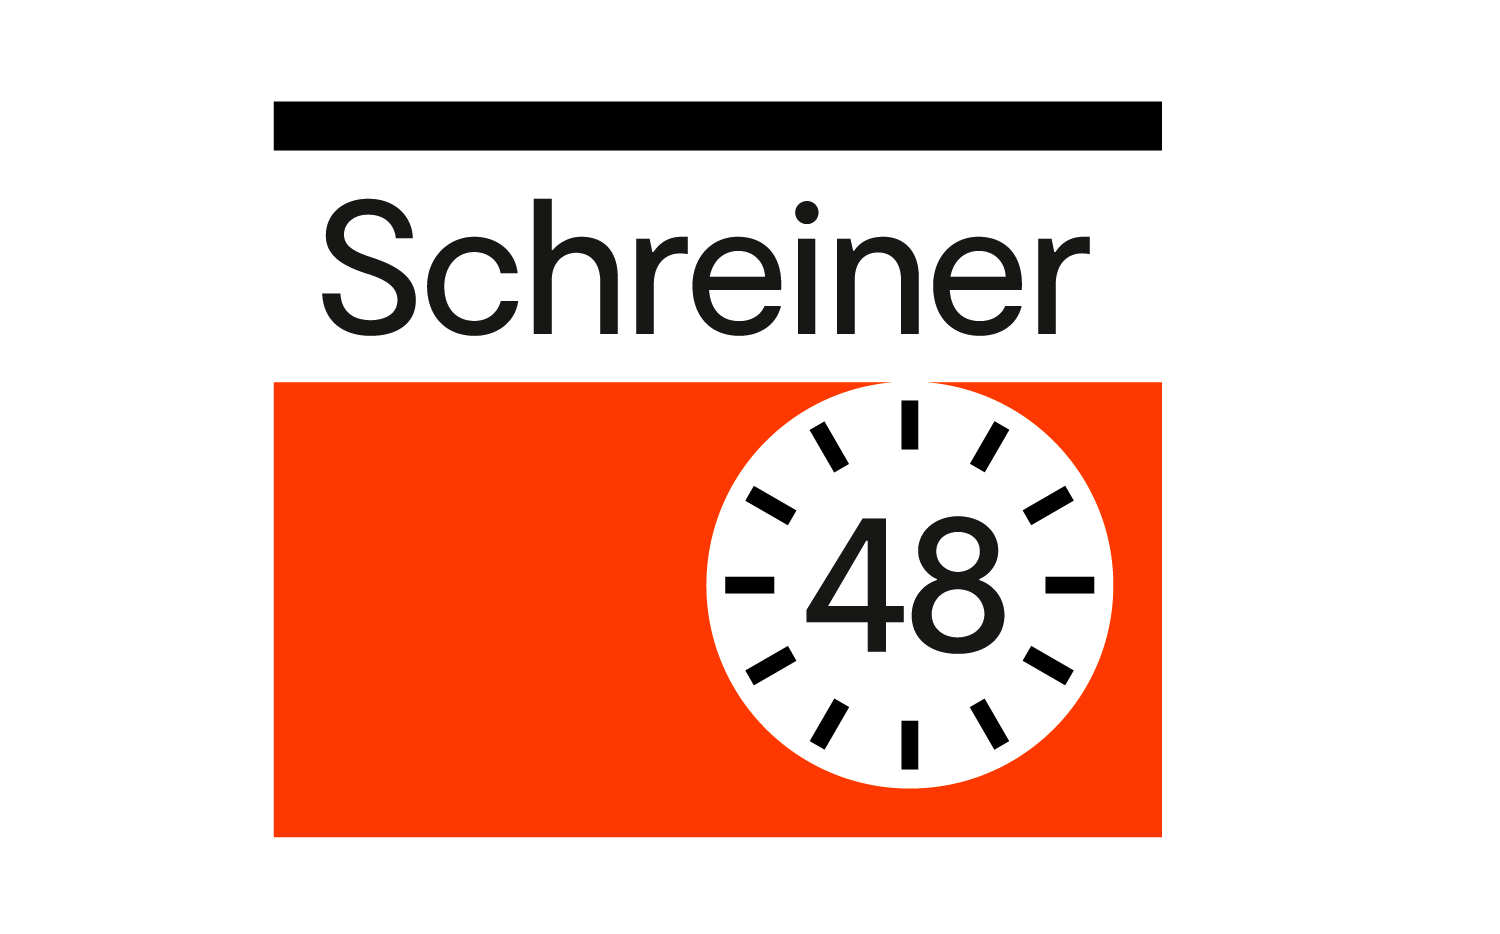 Schreiner48 Academy